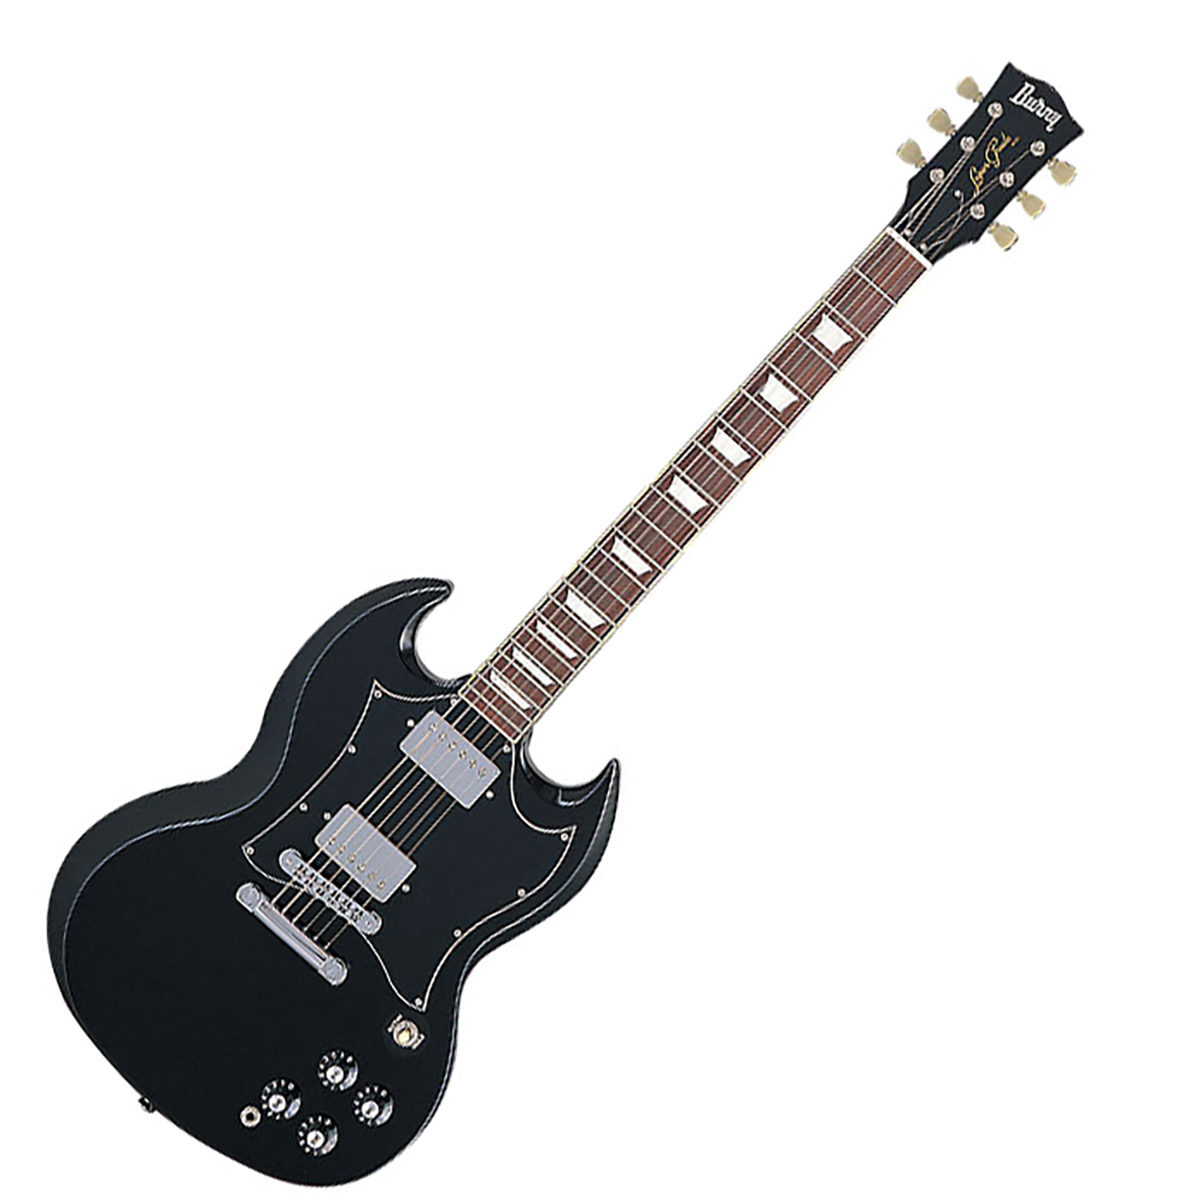 Burny RSG-60 69 BLK ブラック エレキギター SGタイプ バーニー